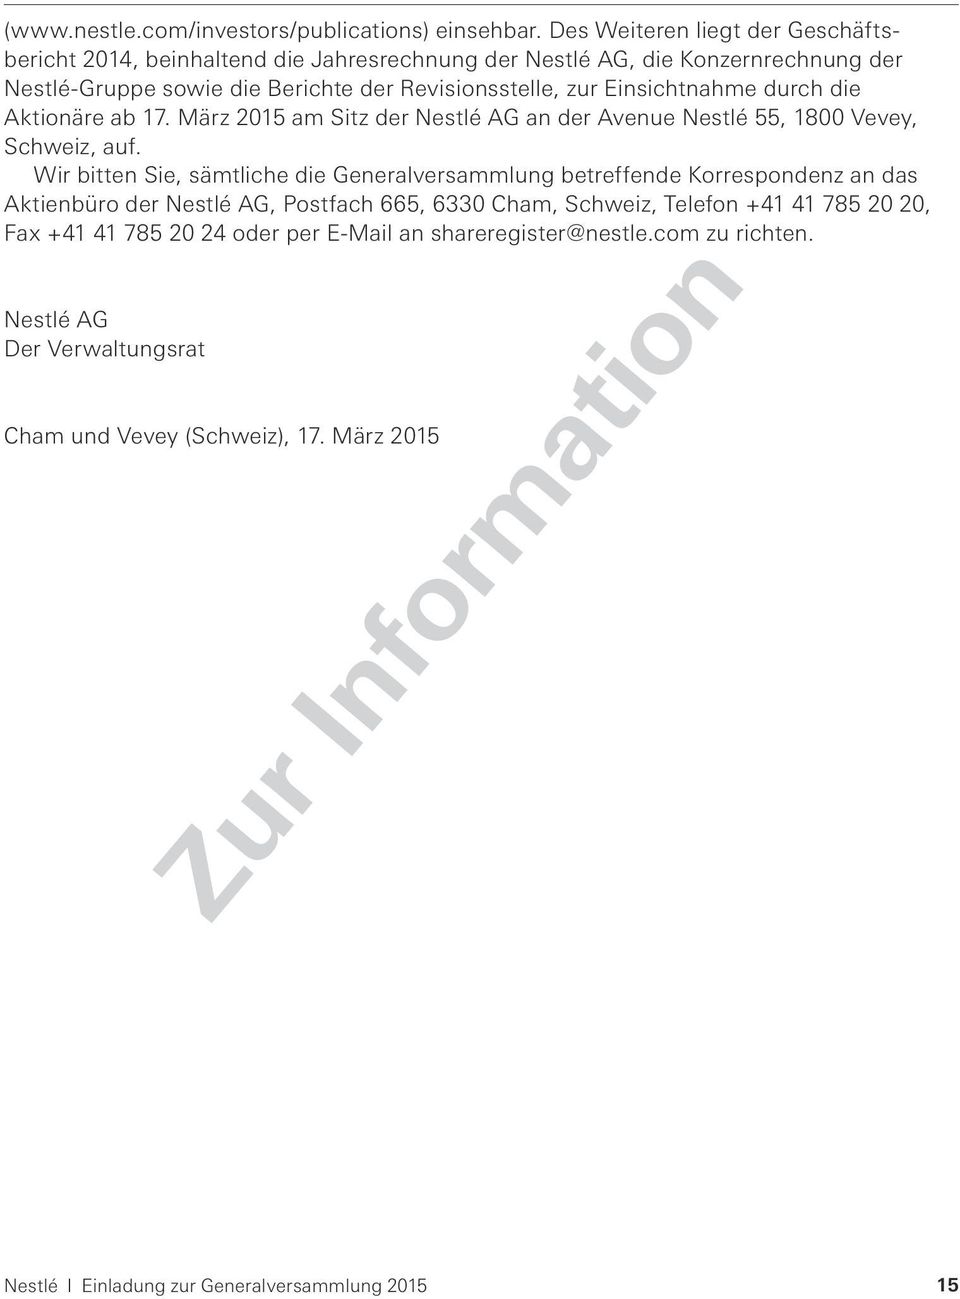 Einsichtnahme durch die Aktionäre ab 17. März 2015 am Sitz der Nestlé AG an der Avenue Nestlé 55, 1800 Vevey, Schweiz, auf.